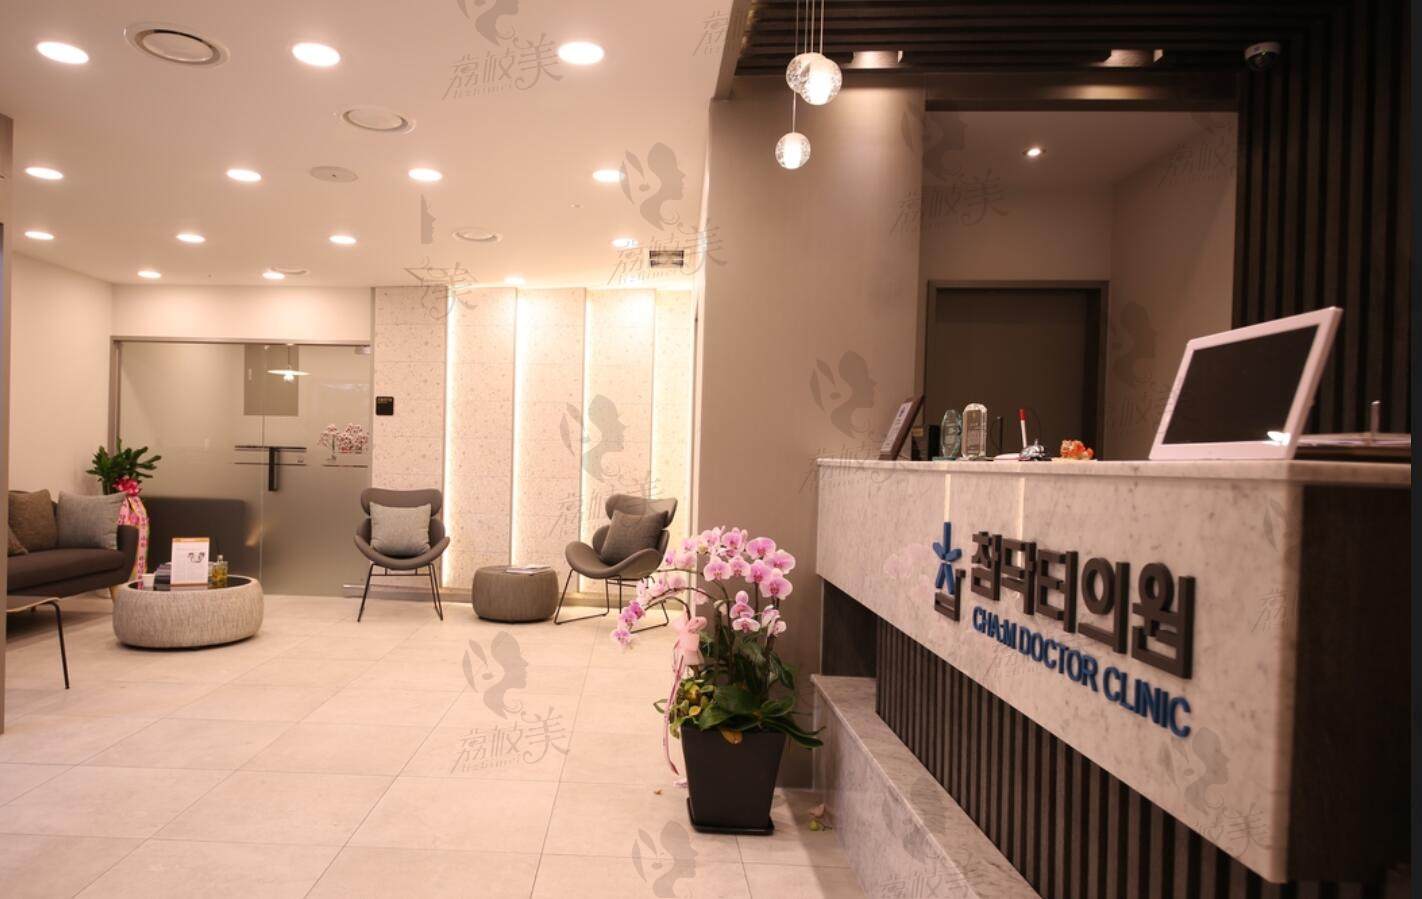 韩国Cham毛发移植医院大厅